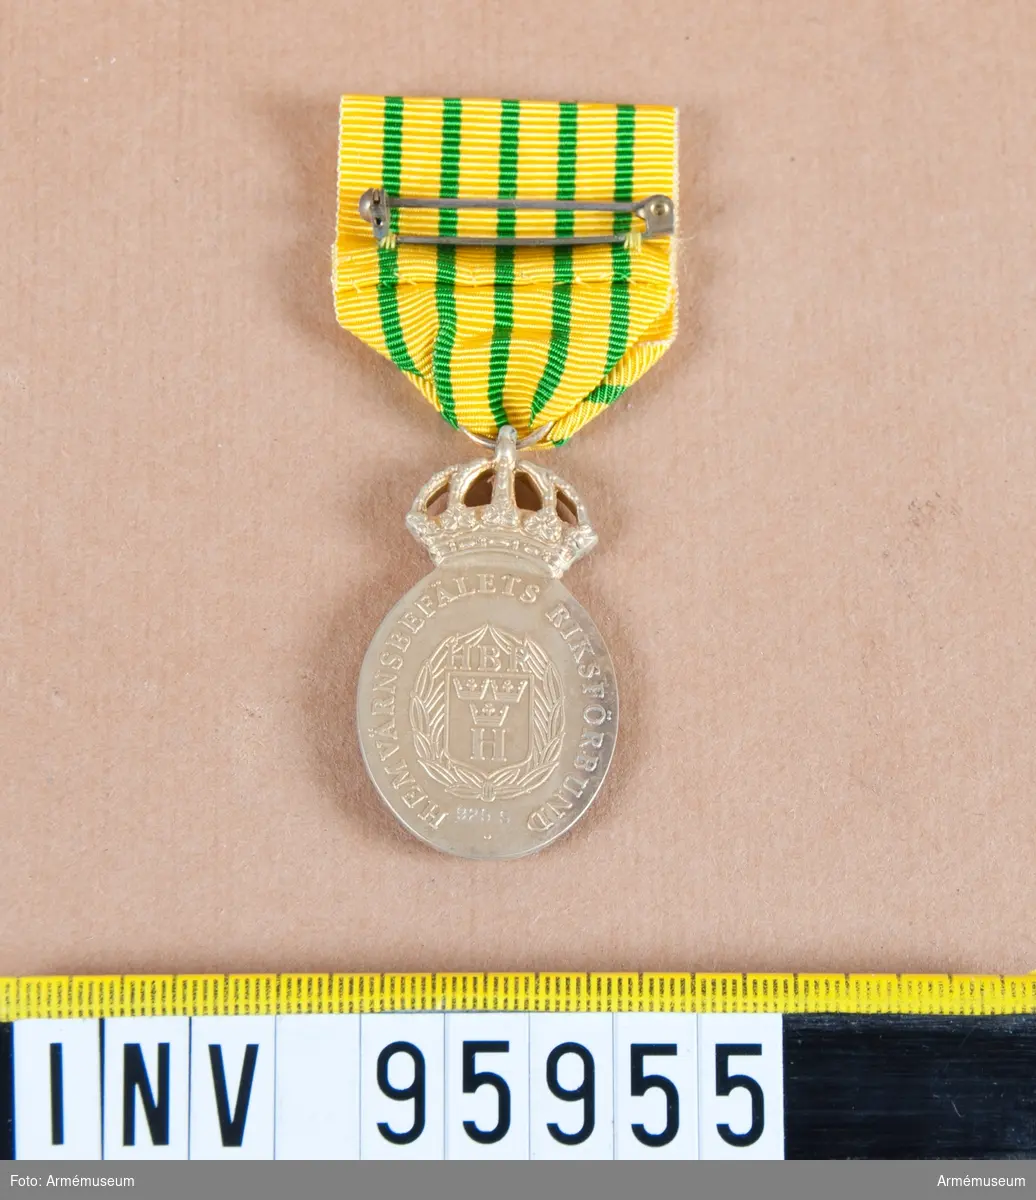 Hemvärnsbefälets riksförbunds kungliga medalj i silver (oval), 8:e storleken.

Band: gult med fem jämt fördelade smala gröna ränder.